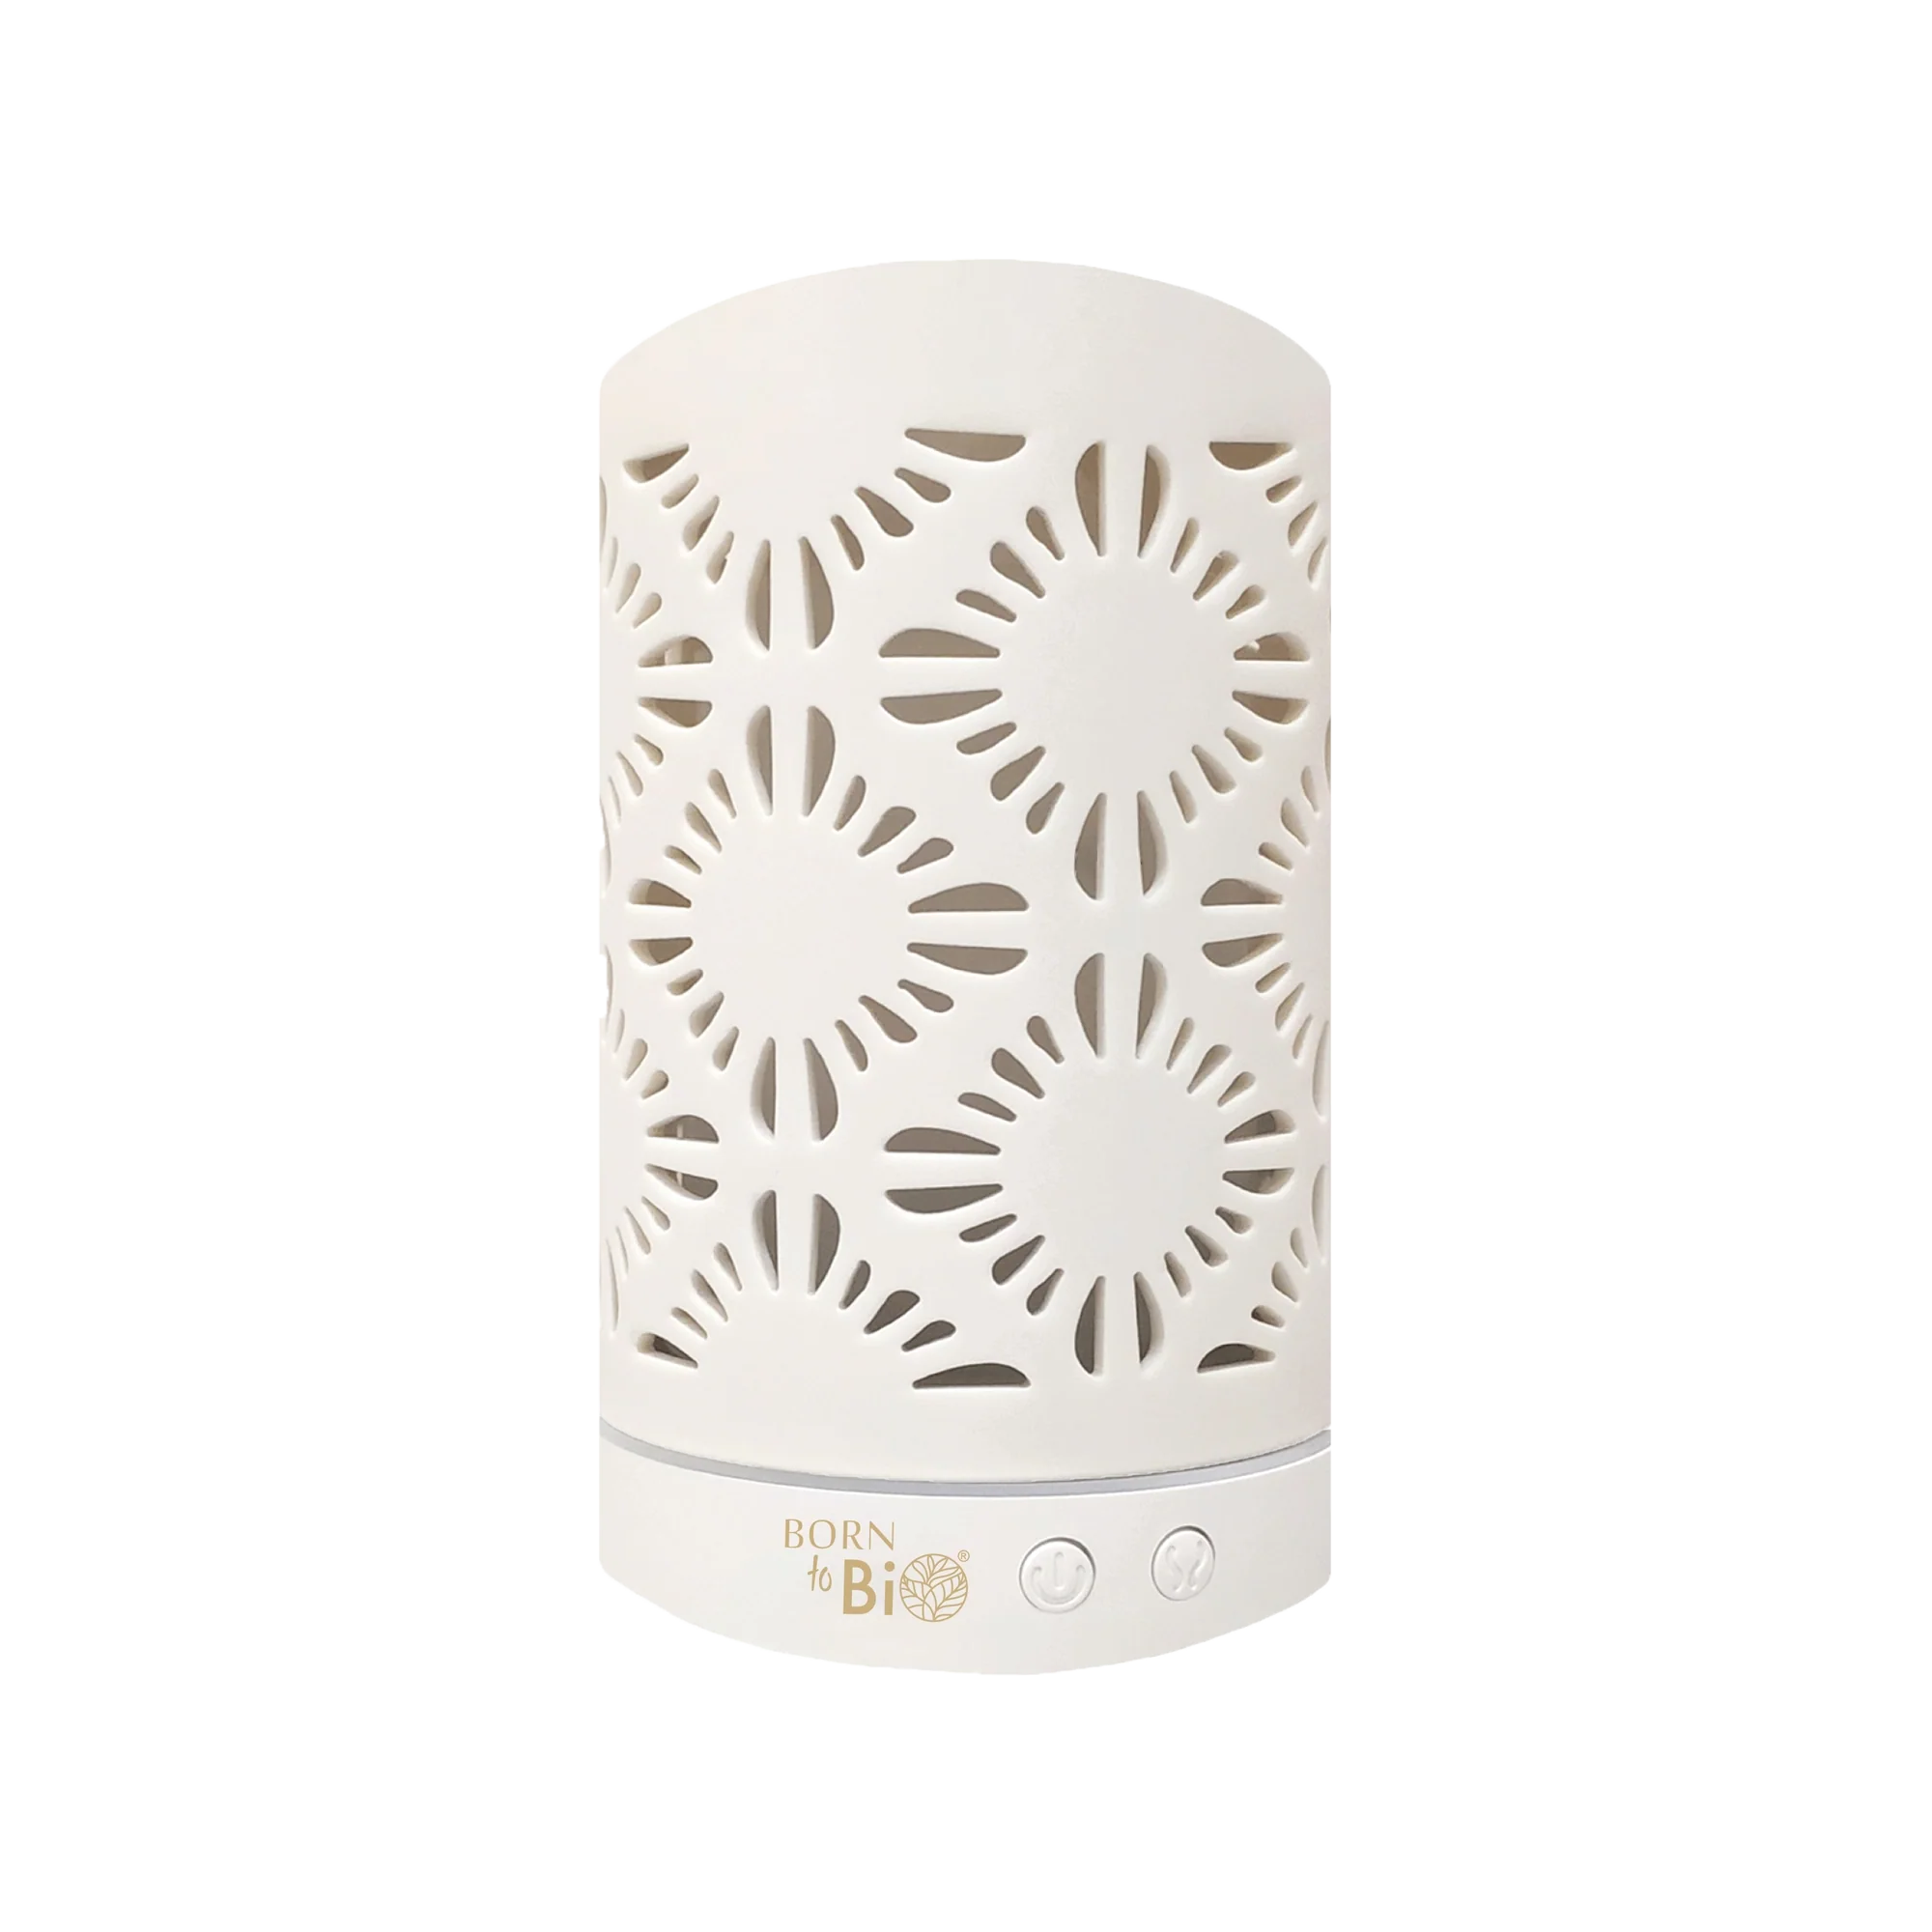 Diffusor aus weißer Keramik - White ceramic diffuser-0